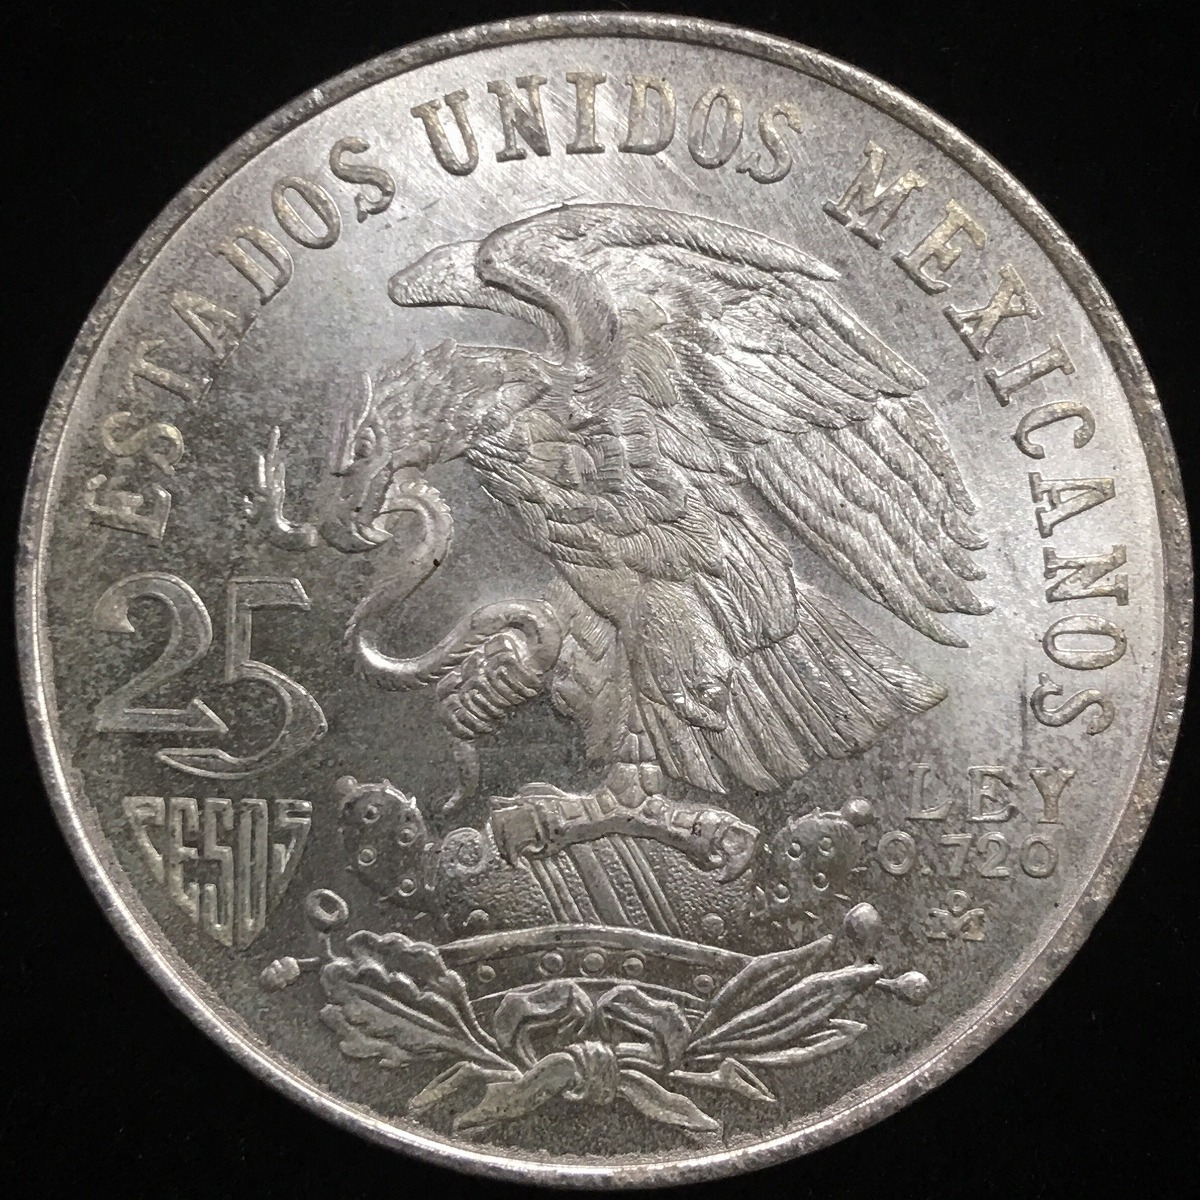 メキシコ銀貨 オリンピック記念銀貨 25ペソ | 収集ワールド